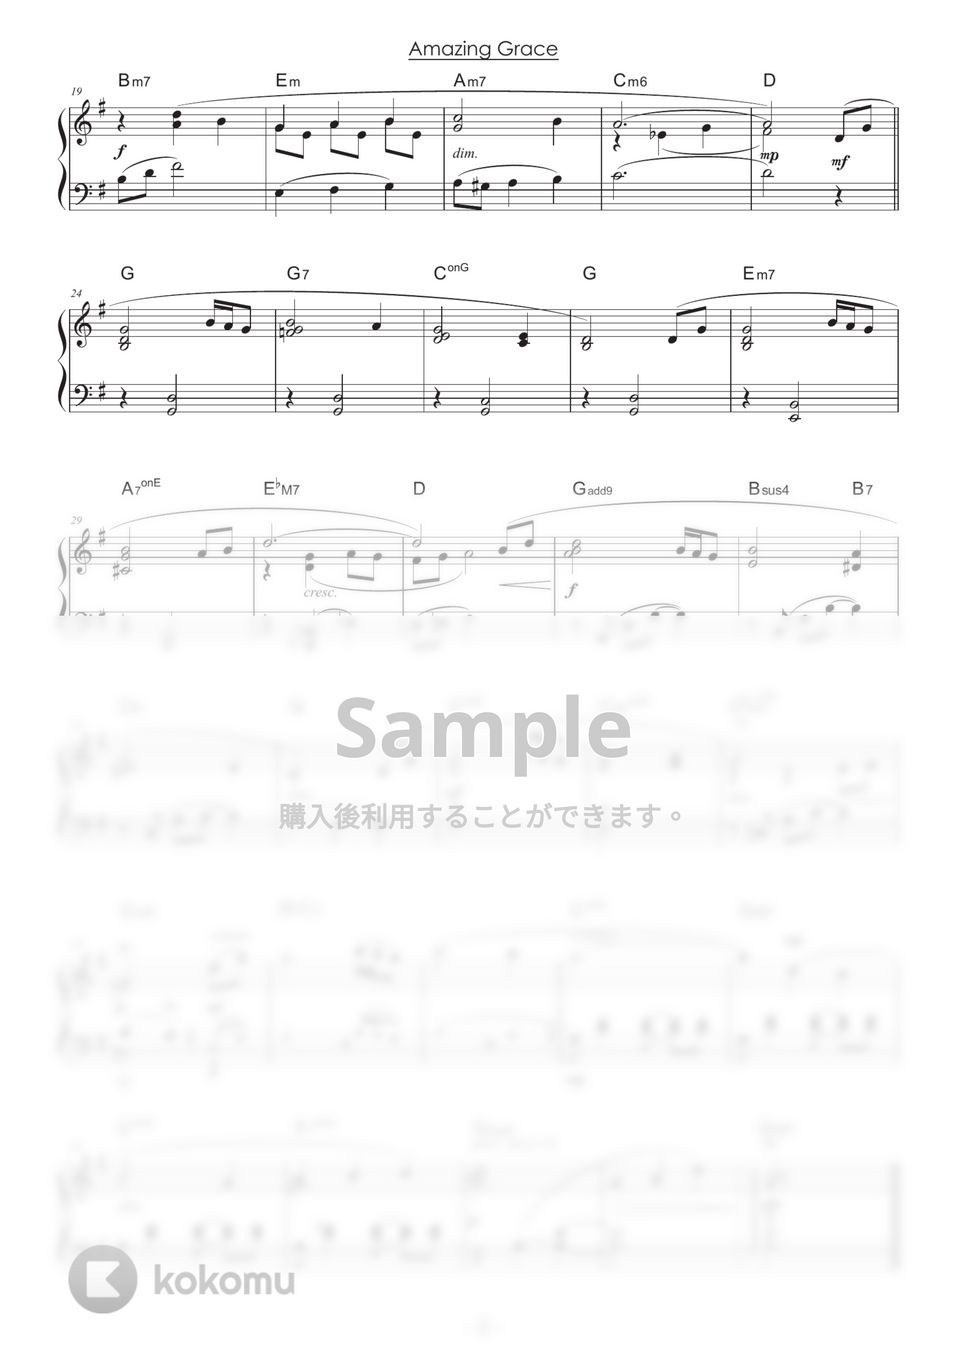 讃美歌 - アメイジング・グレイス / Amazing Grace (ピアノ初級) by 山本雅一